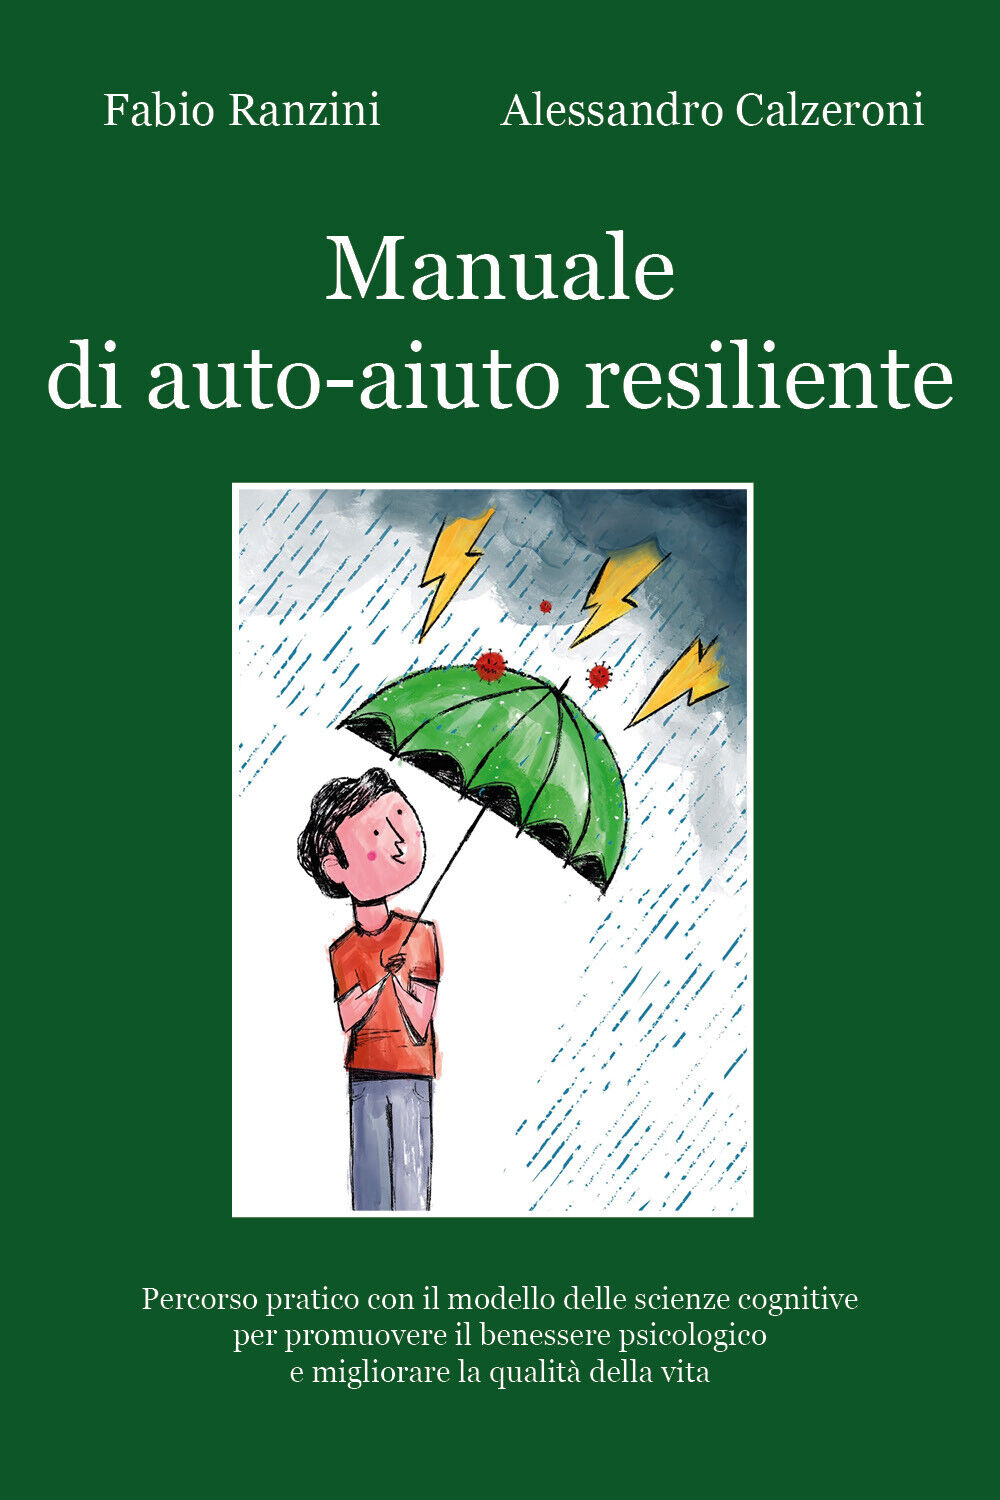 Manuale di auto-aiuto resiliente di Fabio Ranzini - Alessandro Calzeroni,  2021,